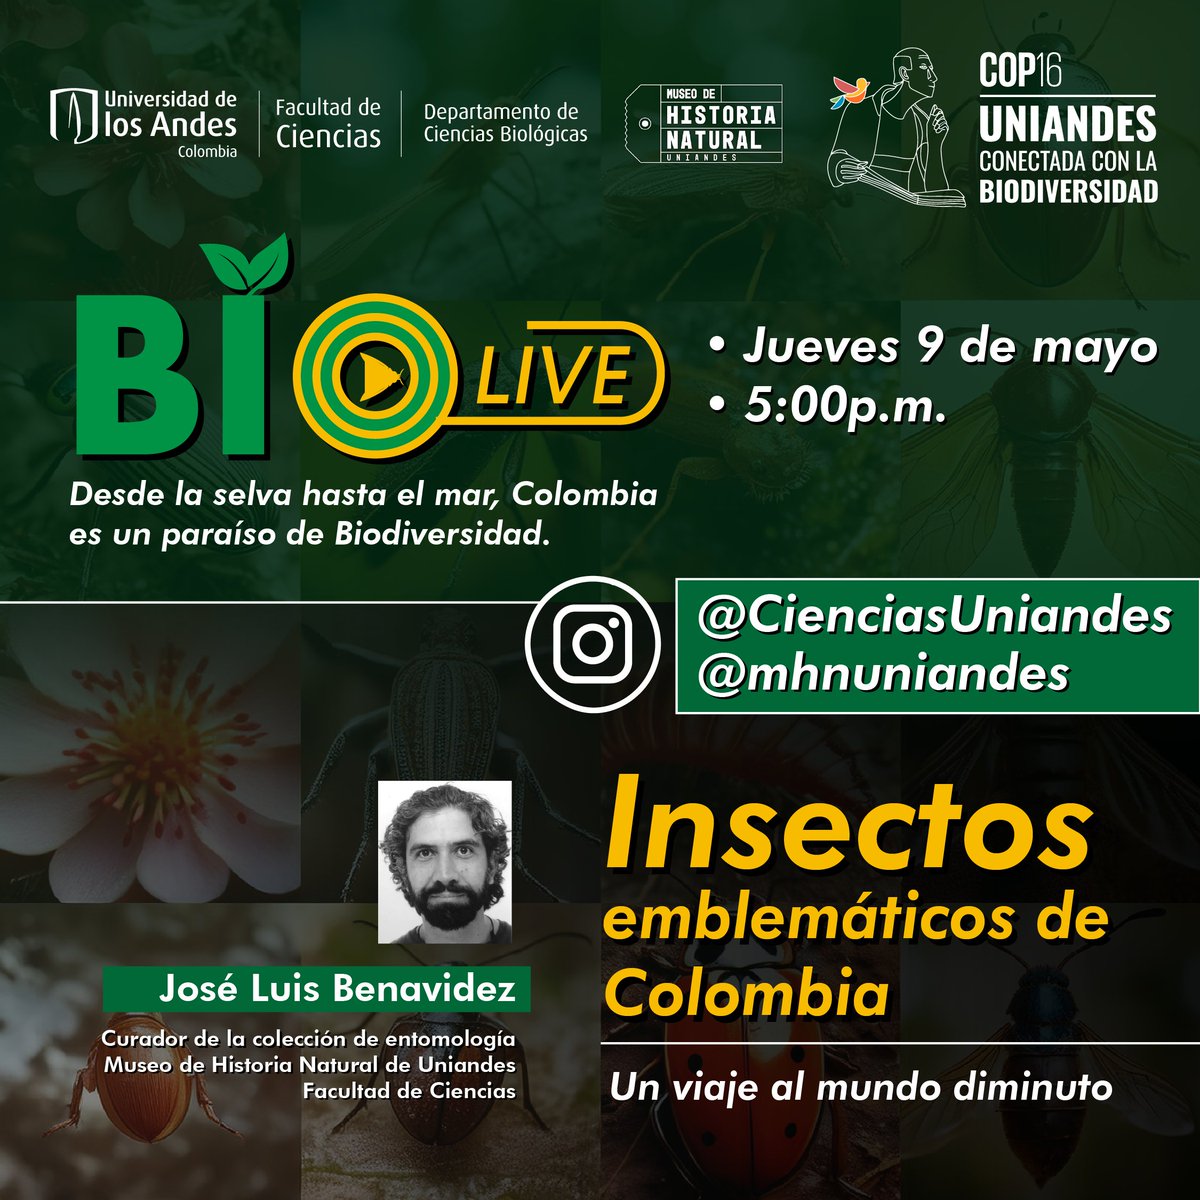 #Imperdible🌿En el marco de la @COP16Colombia, hemos diseñado una serie de Lives donde exploramos la biodiversidad de 🇨🇴 a través de las colecciones biológicas del Museo de Historia Natural de @Uniandes. 👉Transmisión en vivo desde Instagram de @cienciasuniandes y @MHNuniandes